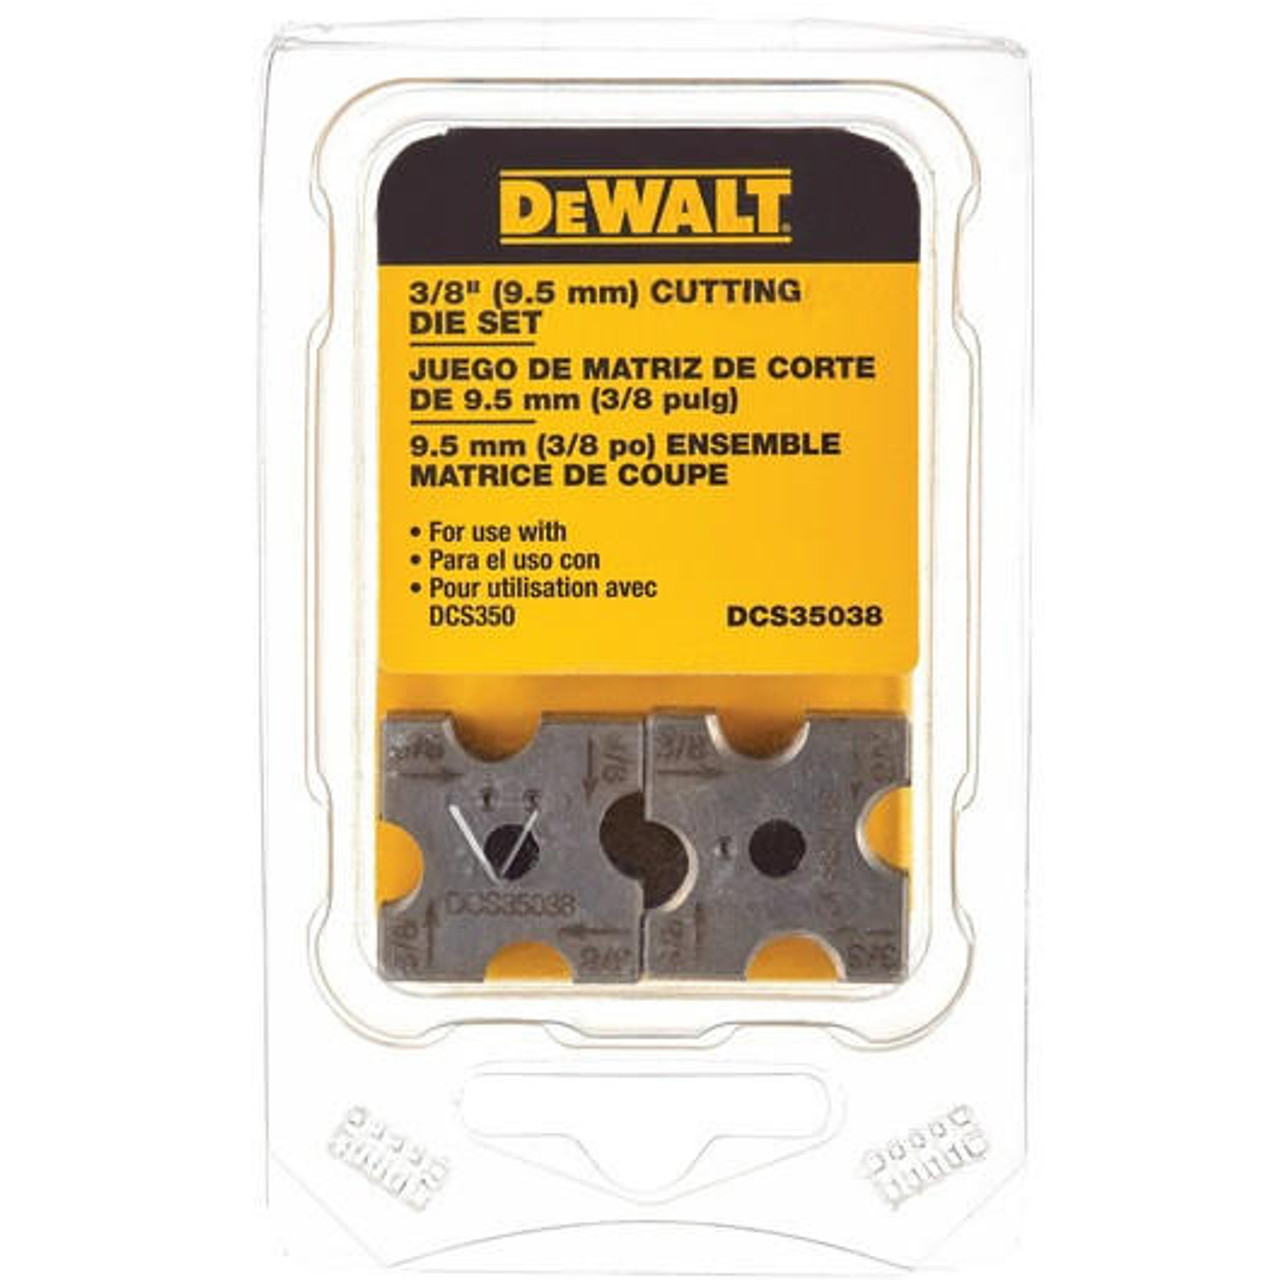 Dewalt DEWALT DCS35038 3/8" Replacement Cutting Die Set for the DCS350 Threaded Rod Cutting Tool 